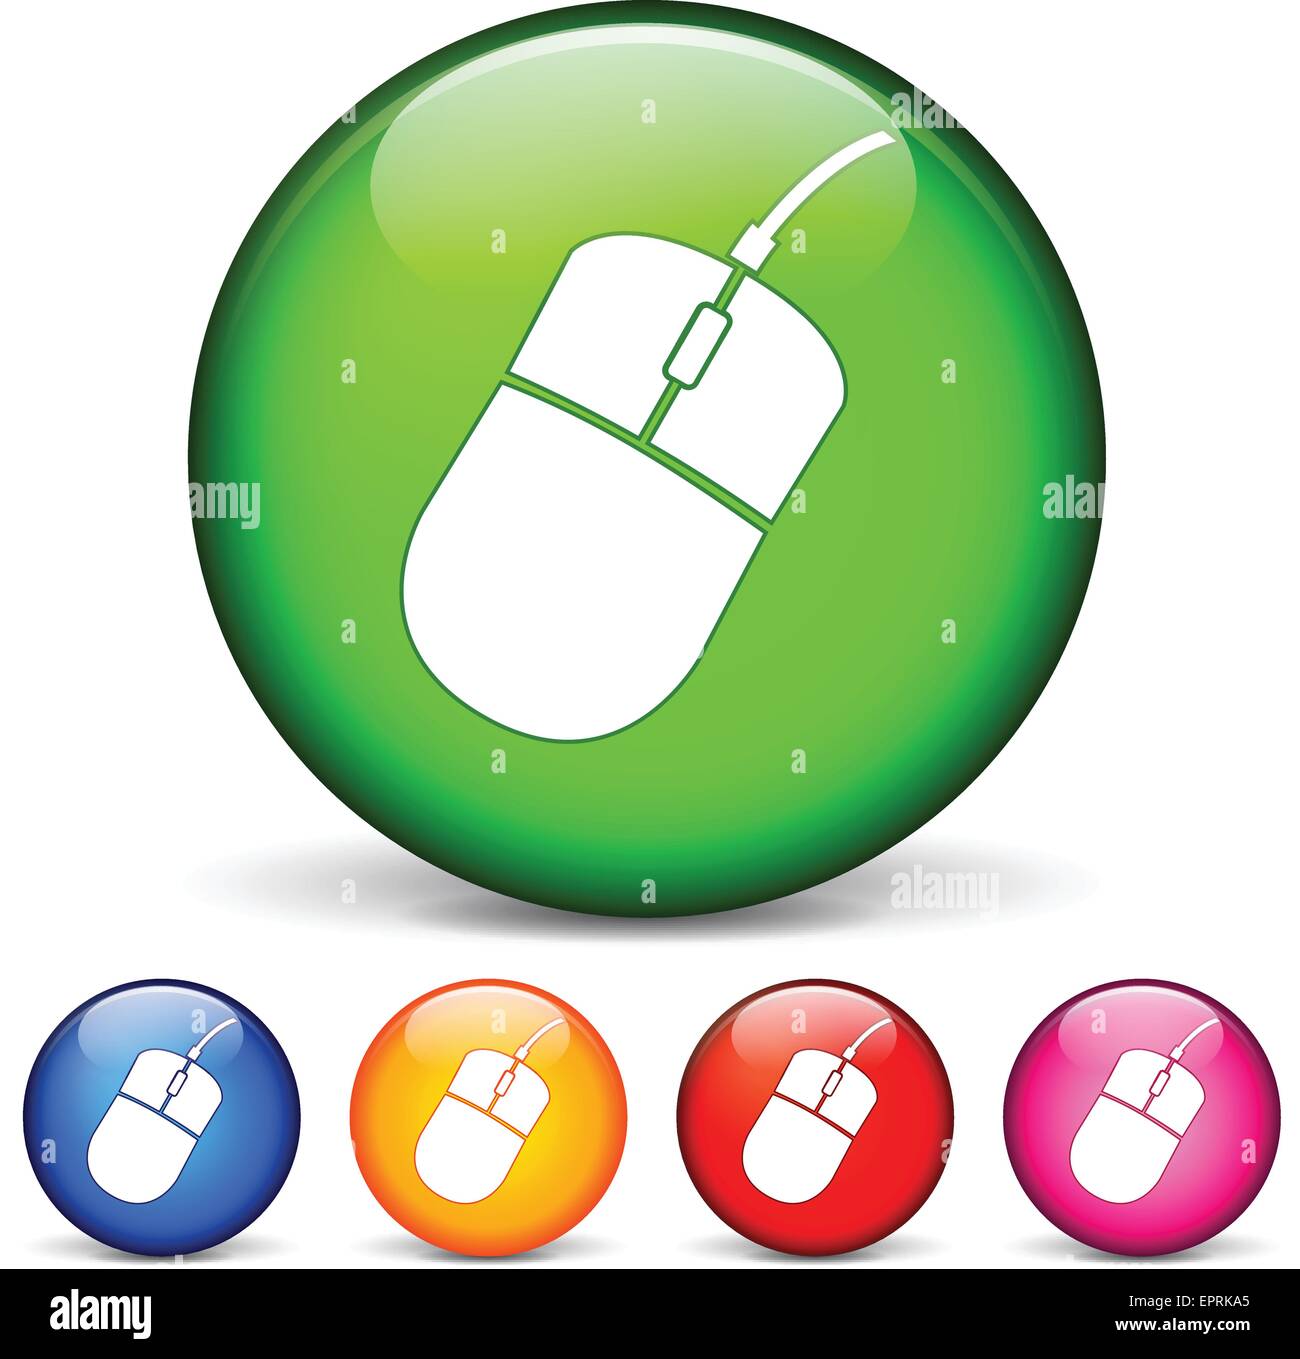 Vektor-Illustration von Kreis-Icons für die Computer-Maus Stock Vektor